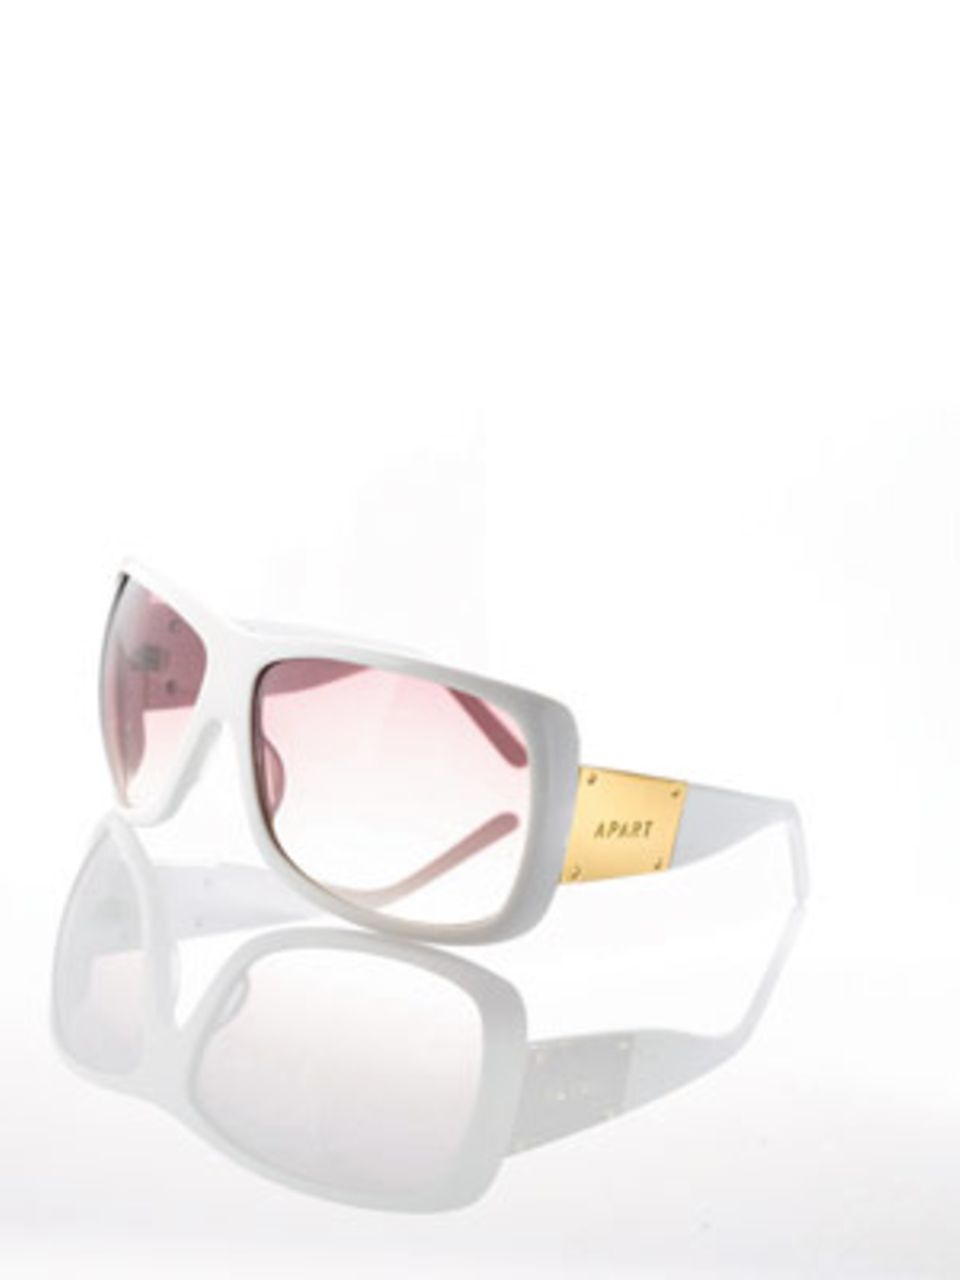 Große Sonnenbrille in Weiß mit Details in Gold von Apart, um 80 Euro. Über www.apart-accessoires.de.